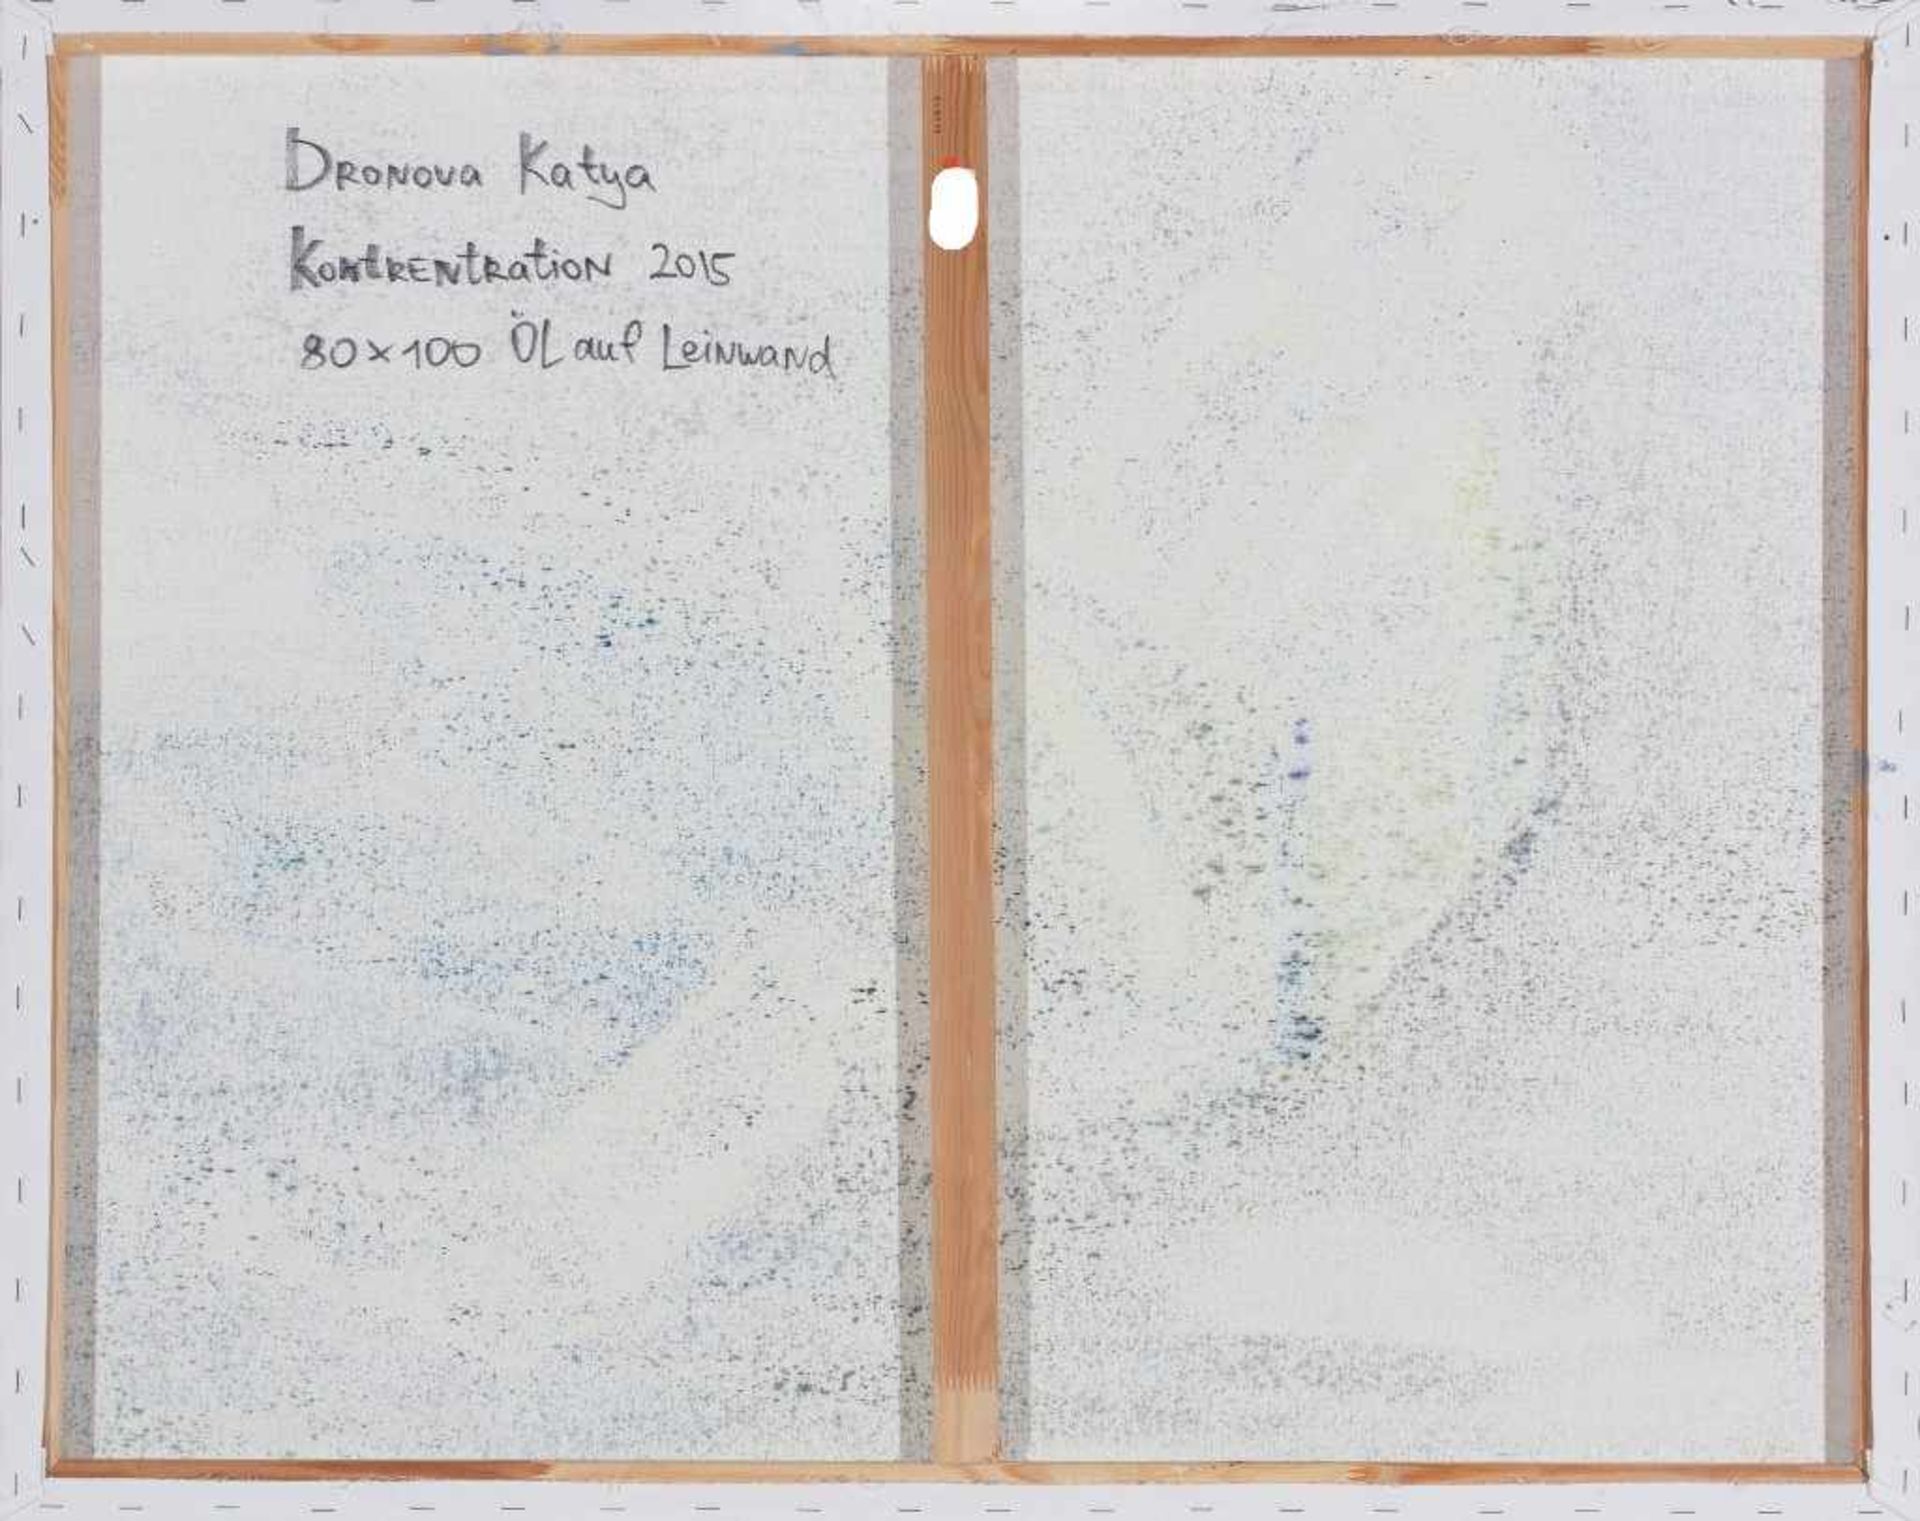 Katya Dronova. Geb. 1979 in Moskau. Monogr. und (20)15 dat. Rs. bez., dat. und bet. "Konzentration". - Bild 2 aus 2